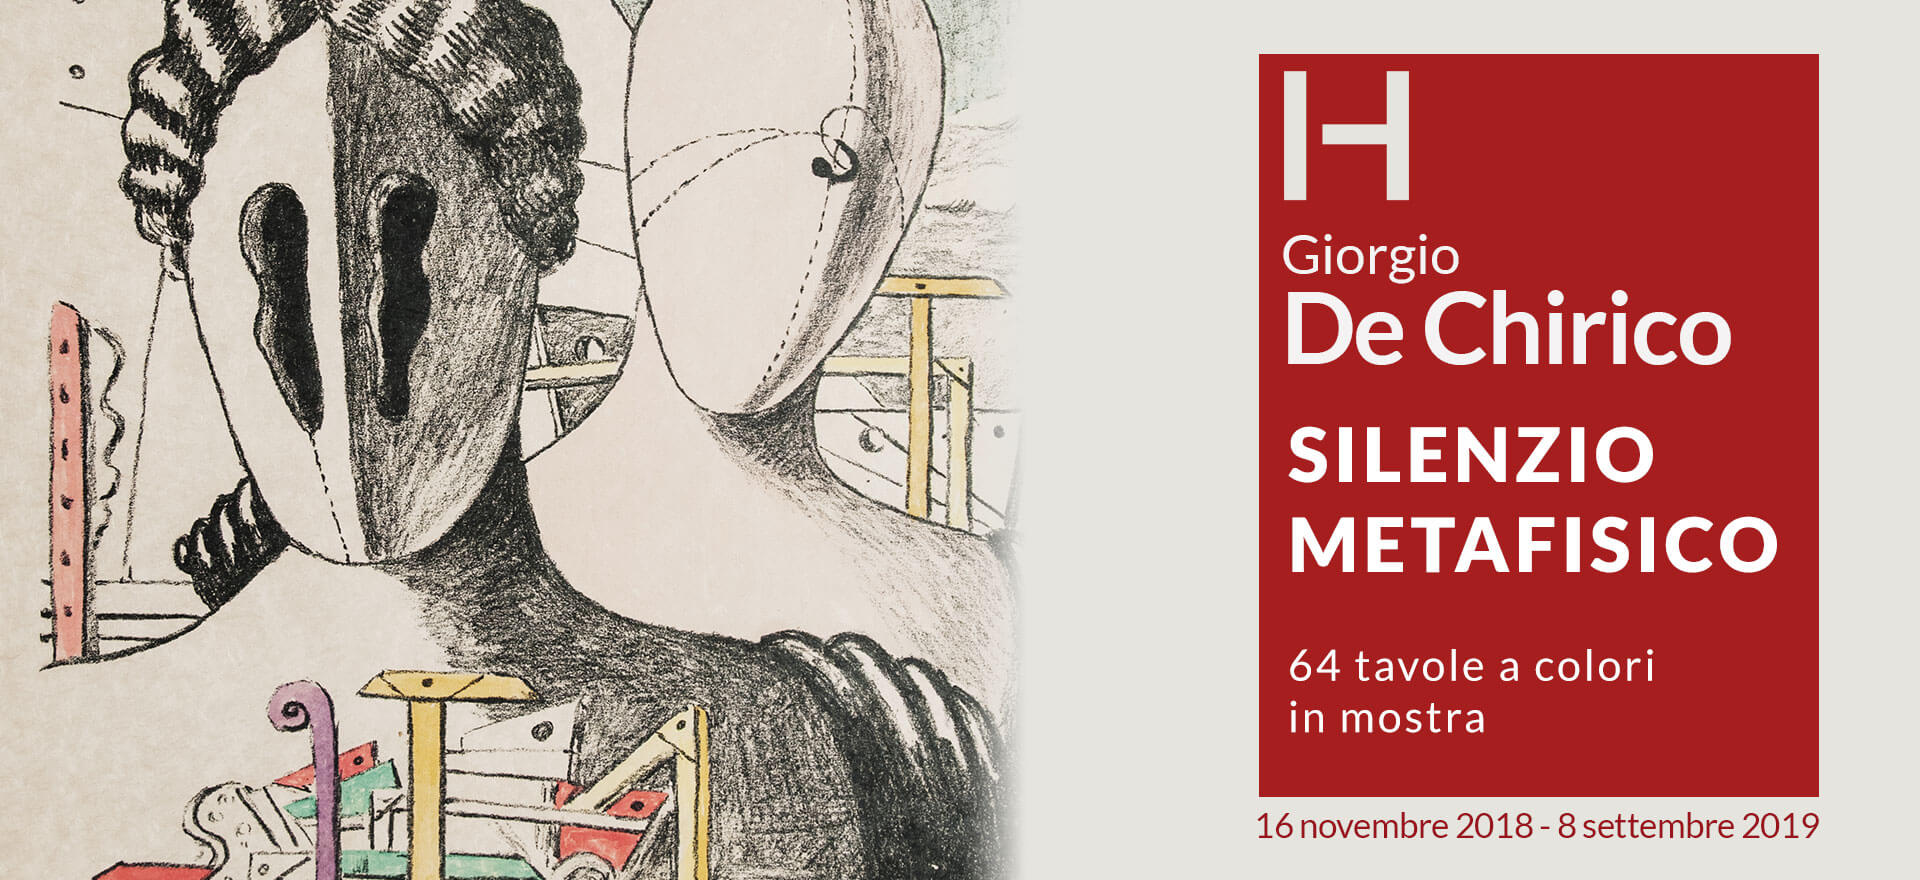 Giorgio De Chirico mostra Historian Gallery Varese silenzio della metafisica